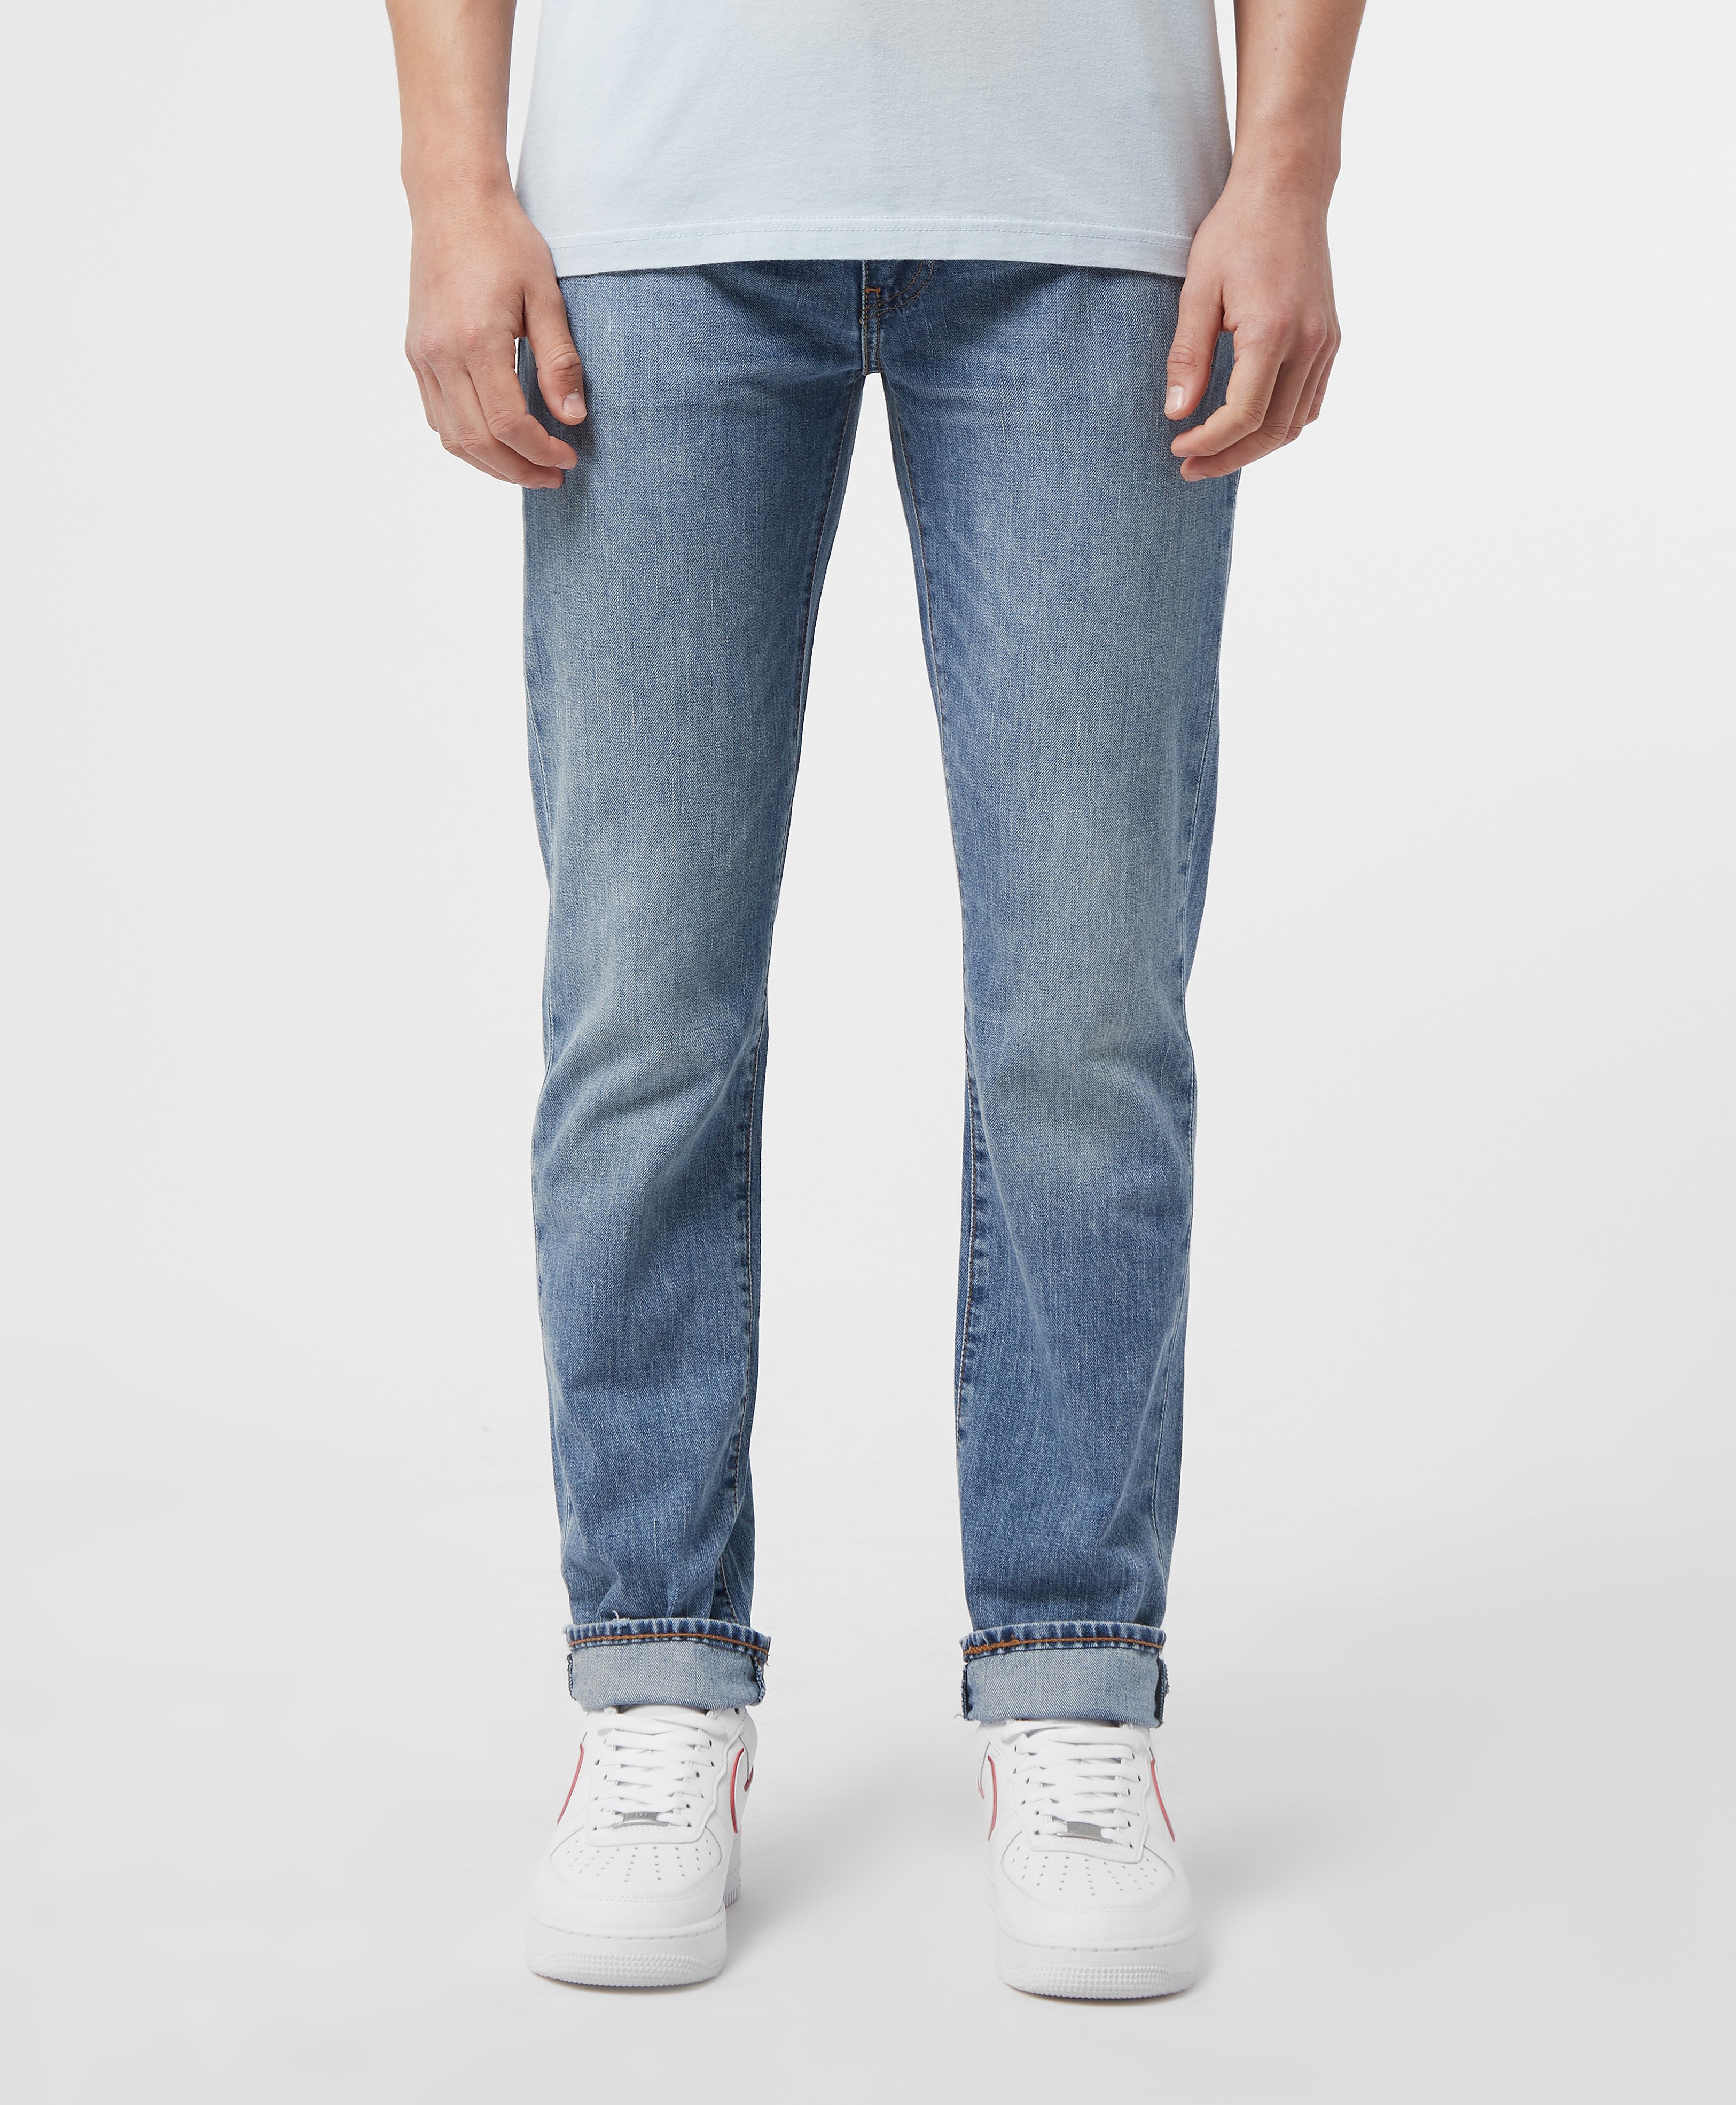 Men's Levis 511 Slim Fit Jeans - Blue, Blue product